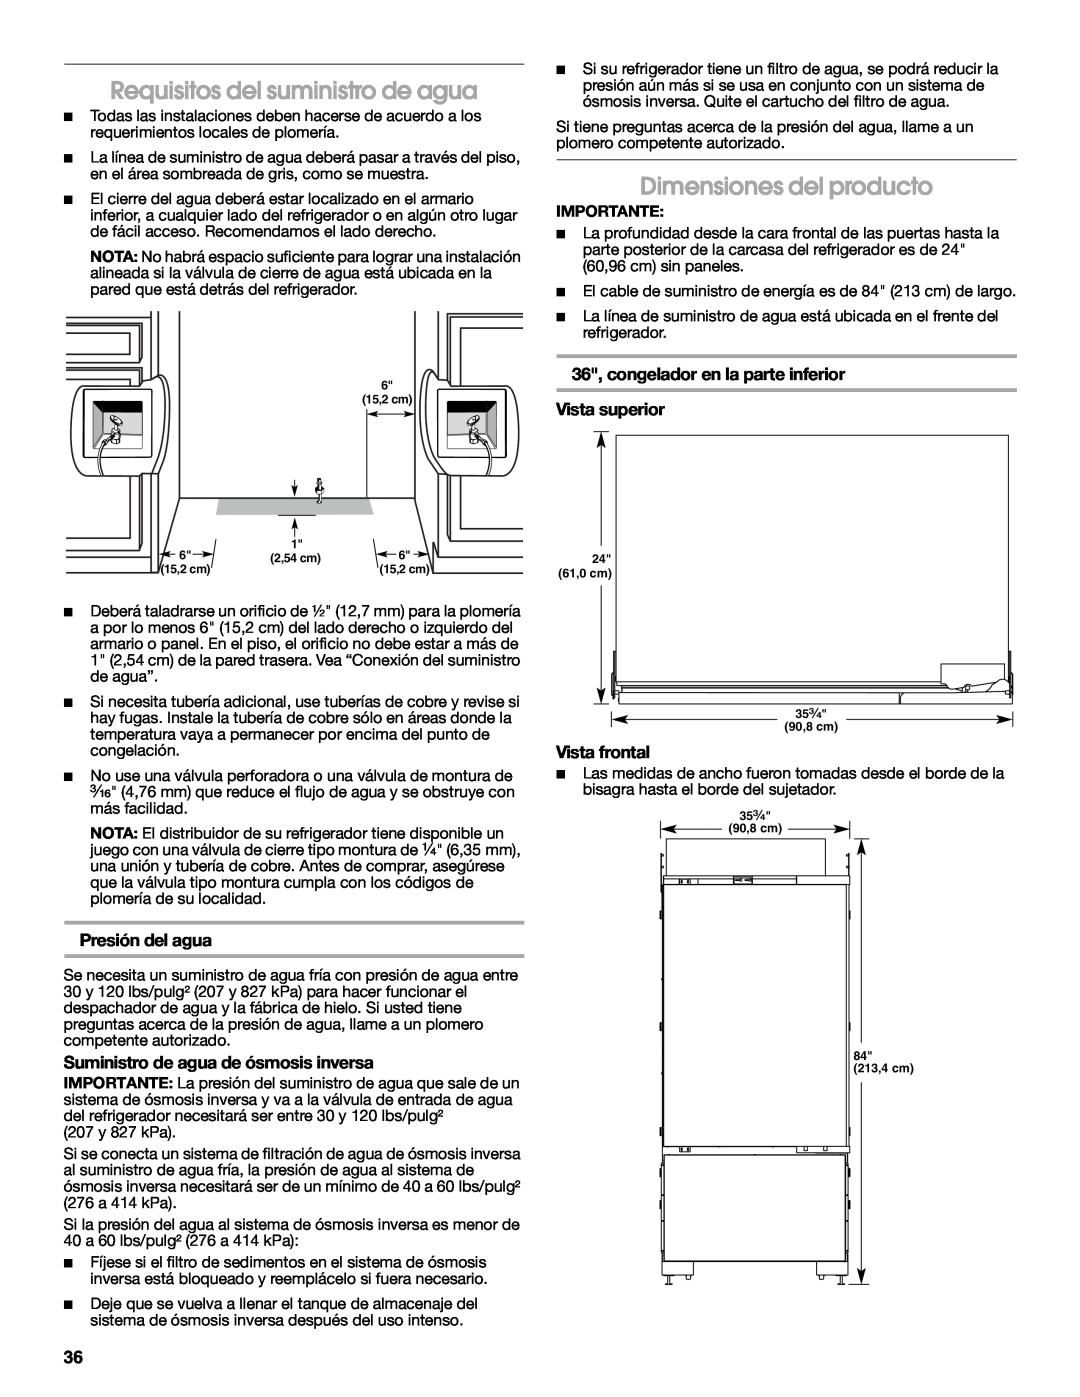 Jenn-Air W10379137A manual Requisitos del suministro de agua, Dimensiones del producto, 36, congelador en la parte inferior 